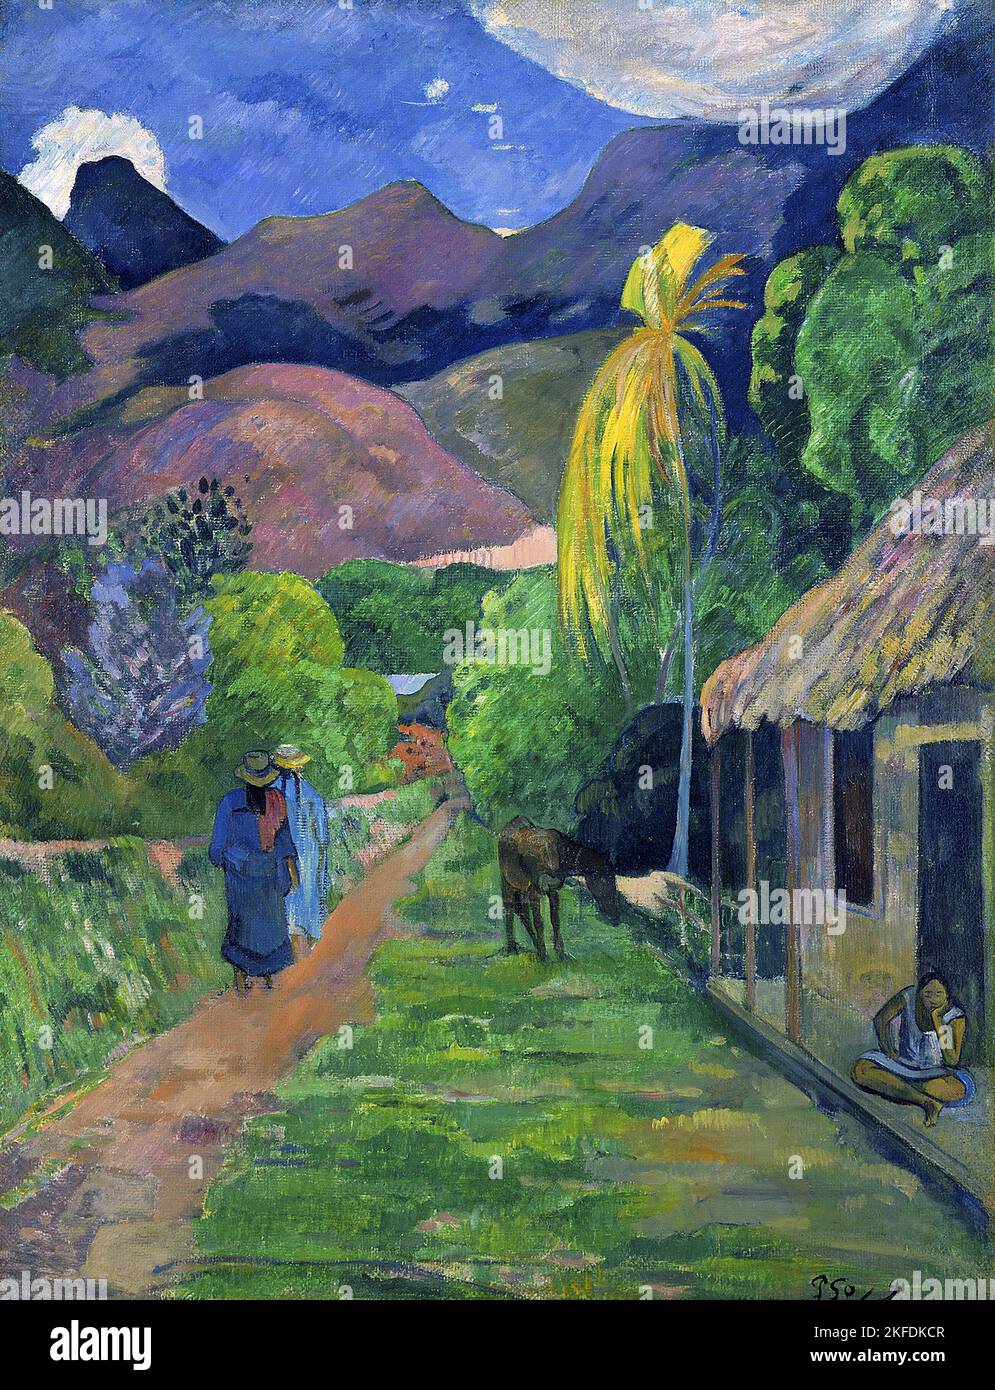 Tahiti: 'Rue de Tahiti' (strada a Tahiti). Dipinto a olio su tela di Paul Gauguin (7 giugno 1848 - 8 maggio 1903), 1891. Paul Gauguin nacque a Parigi nel 1848 e trascorse la sua infanzia in Perù. Lavorò come agente di cambio con poco successo, e soffrì di forti depressione. Dipinse anche lui. Nel 1891, Gauguin, frustrato dalla mancanza di riconoscimento in patria e dalla mancanza di difficoltà finanziaria, salì ai tropici per sfuggire alla civiltà europea e "tutto ciò che è artificiale e convenzionale”. Il suo tempo c'era un argomento di grande interesse sia allora che nei tempi moderni. Foto Stock